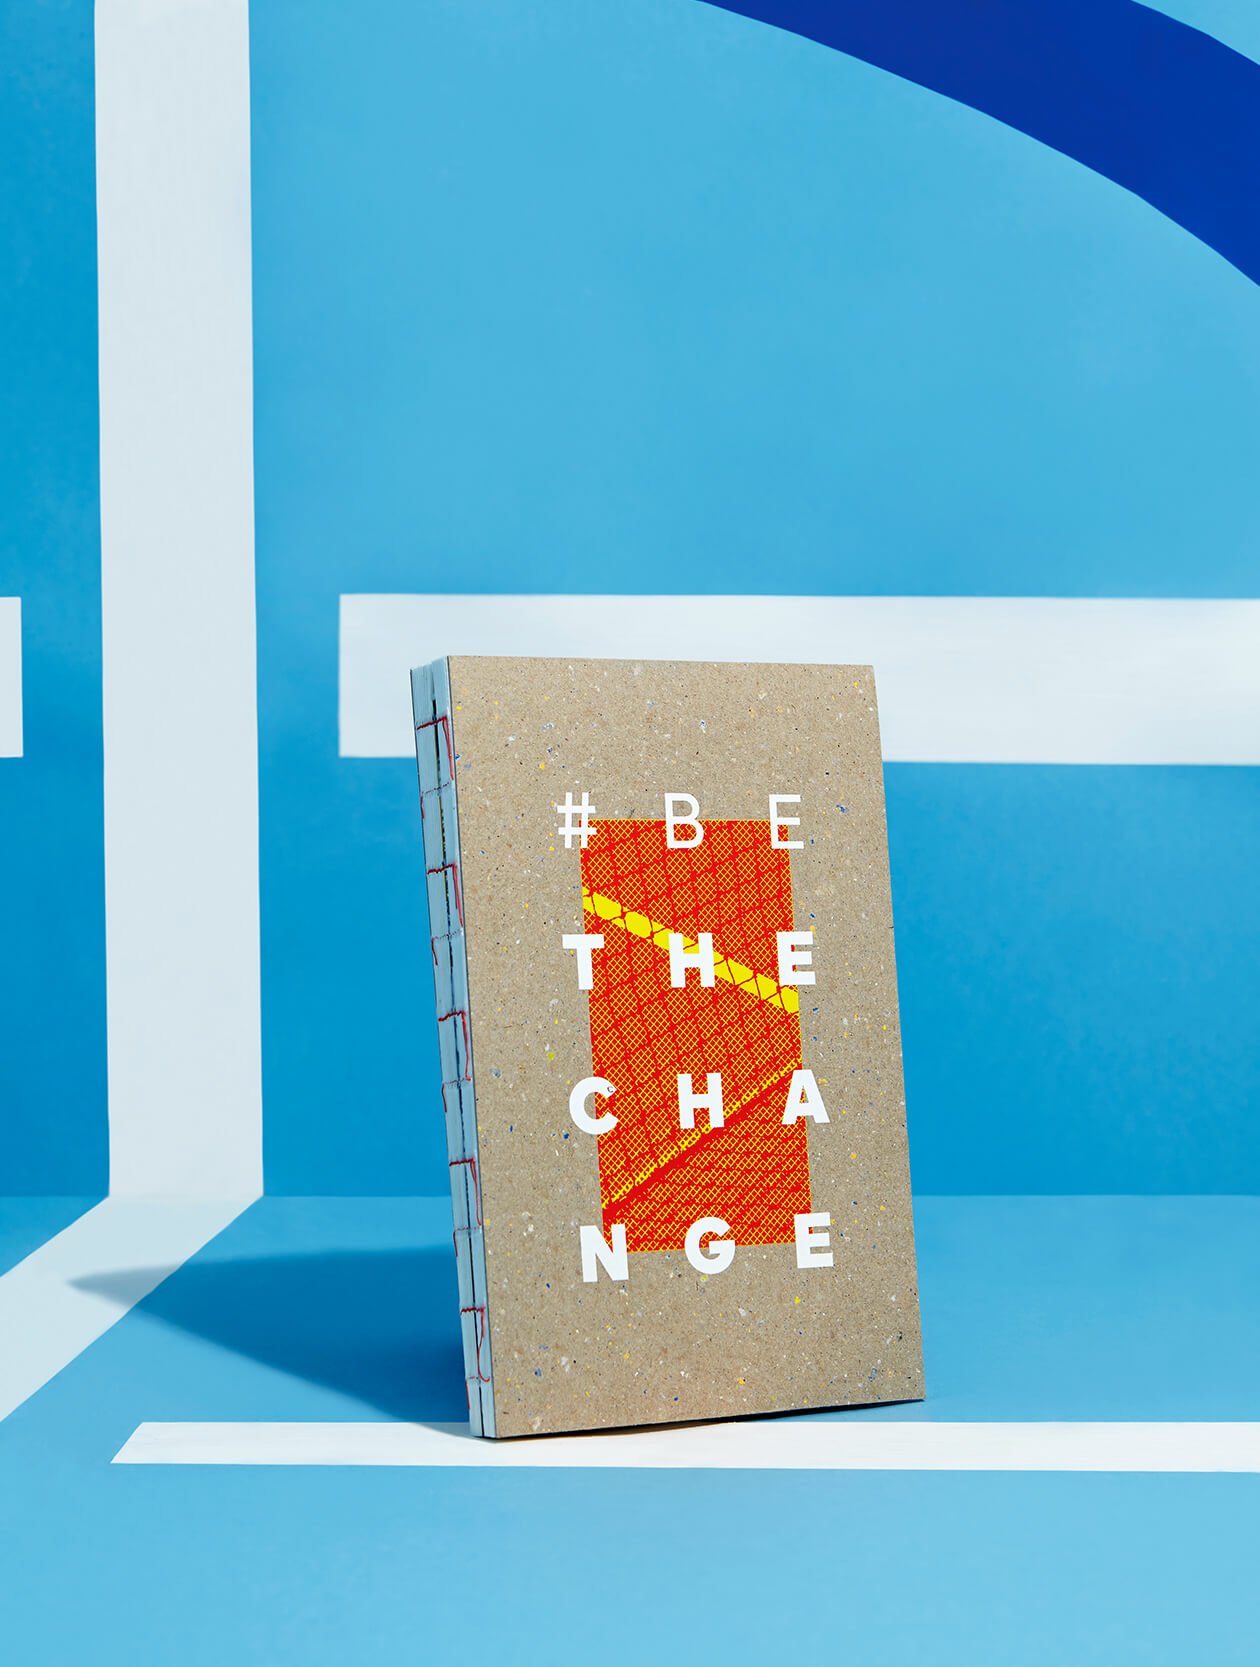 adidas idea book '15 – Nachhaltiges Corporate Notizbuch – Brand Communication, Corporate Publishing, Konzept und Design by ELLIJOT, Fotografiert von EyeCandy Berlin